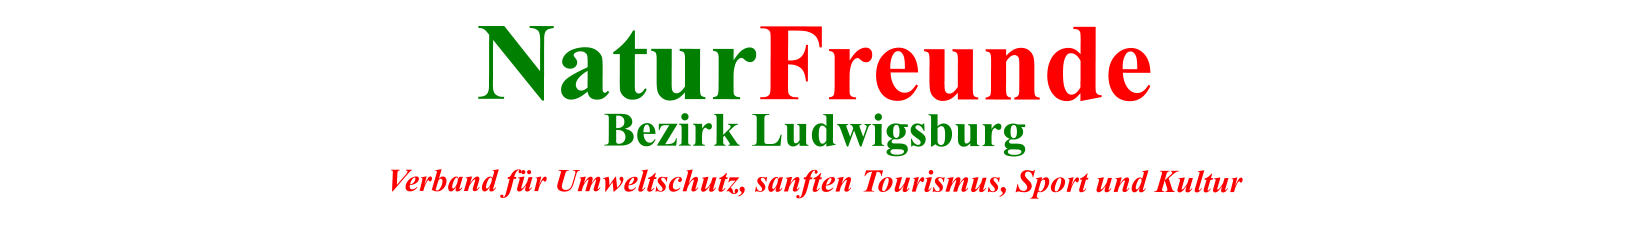 NaturFreunde  Bezirk Ludwigsburg  Verband für Umweltschutz, sanften Tourismus, Sport und Kultur